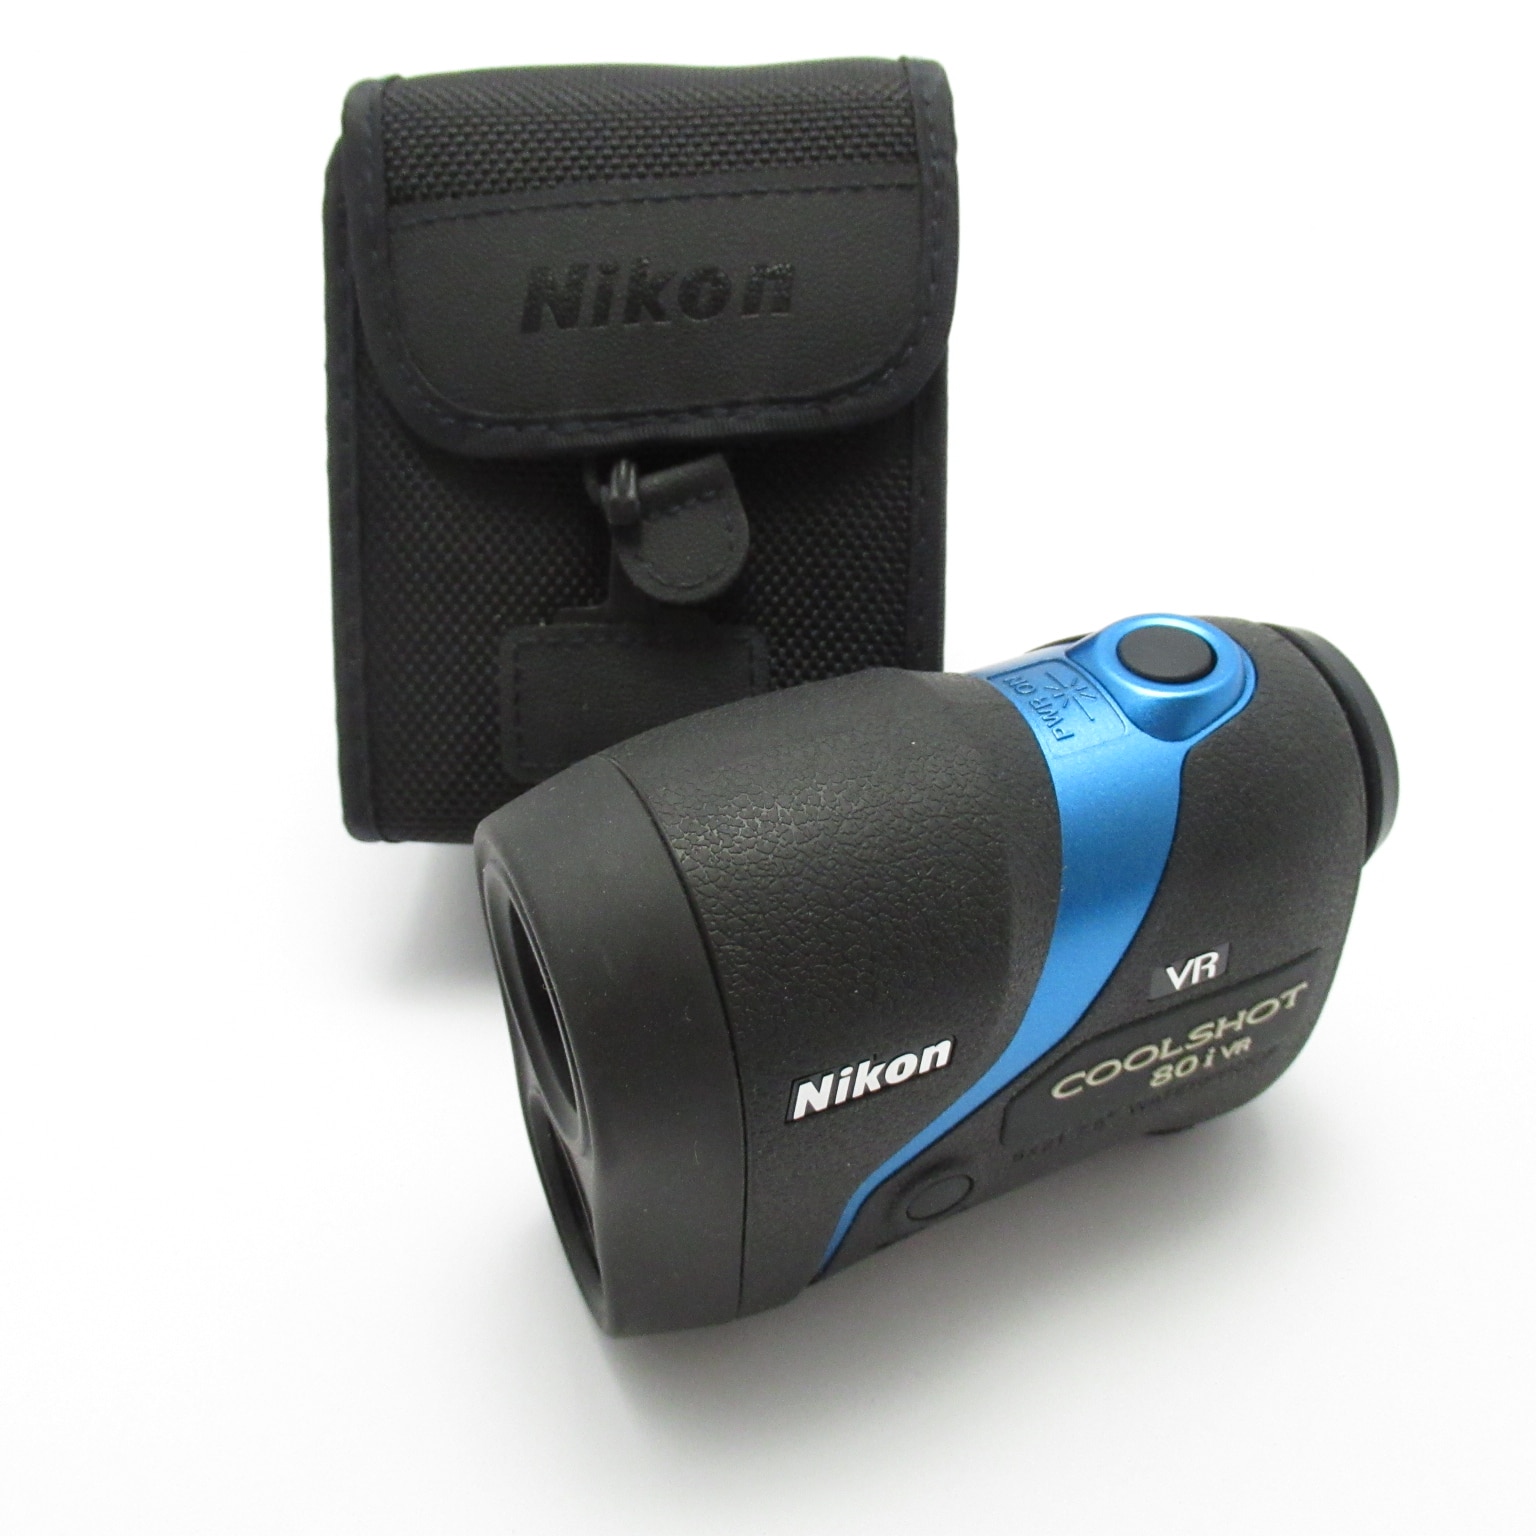 【手ぶれ補正】Coolshot 80i VR Nikon ニコン